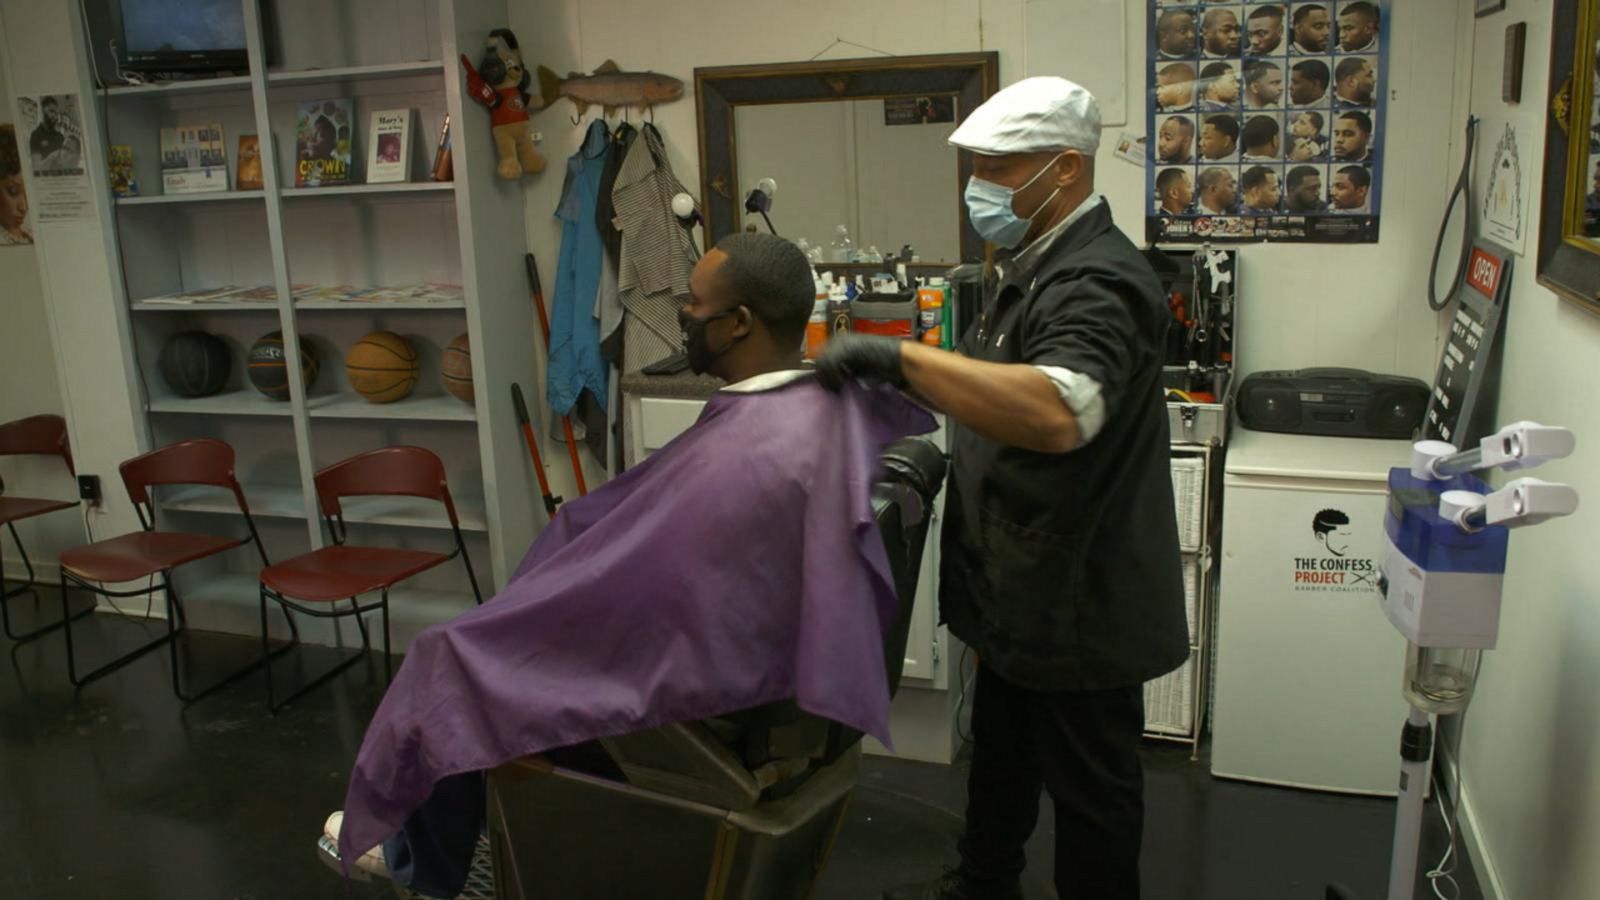 53 Barbershop ideas  barbershop design, barber shop, barber shop decor